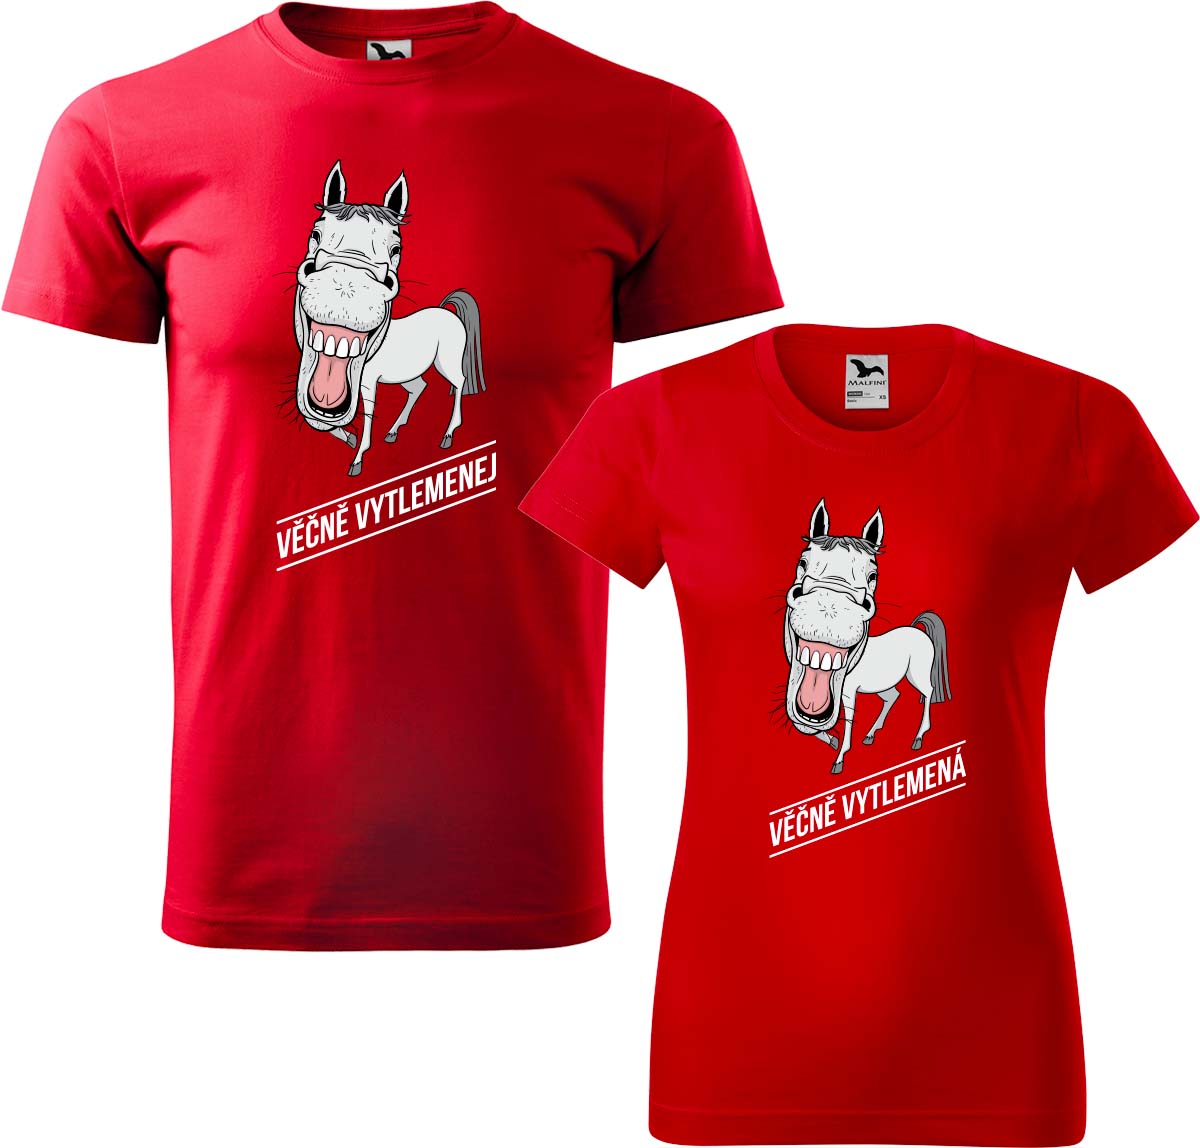 Trička pro páry - Věčně vytlemenej a věčně vytlemená Barva: Červená (07), Velikost dámské tričko: XL, Velikost pánské tričko: XL